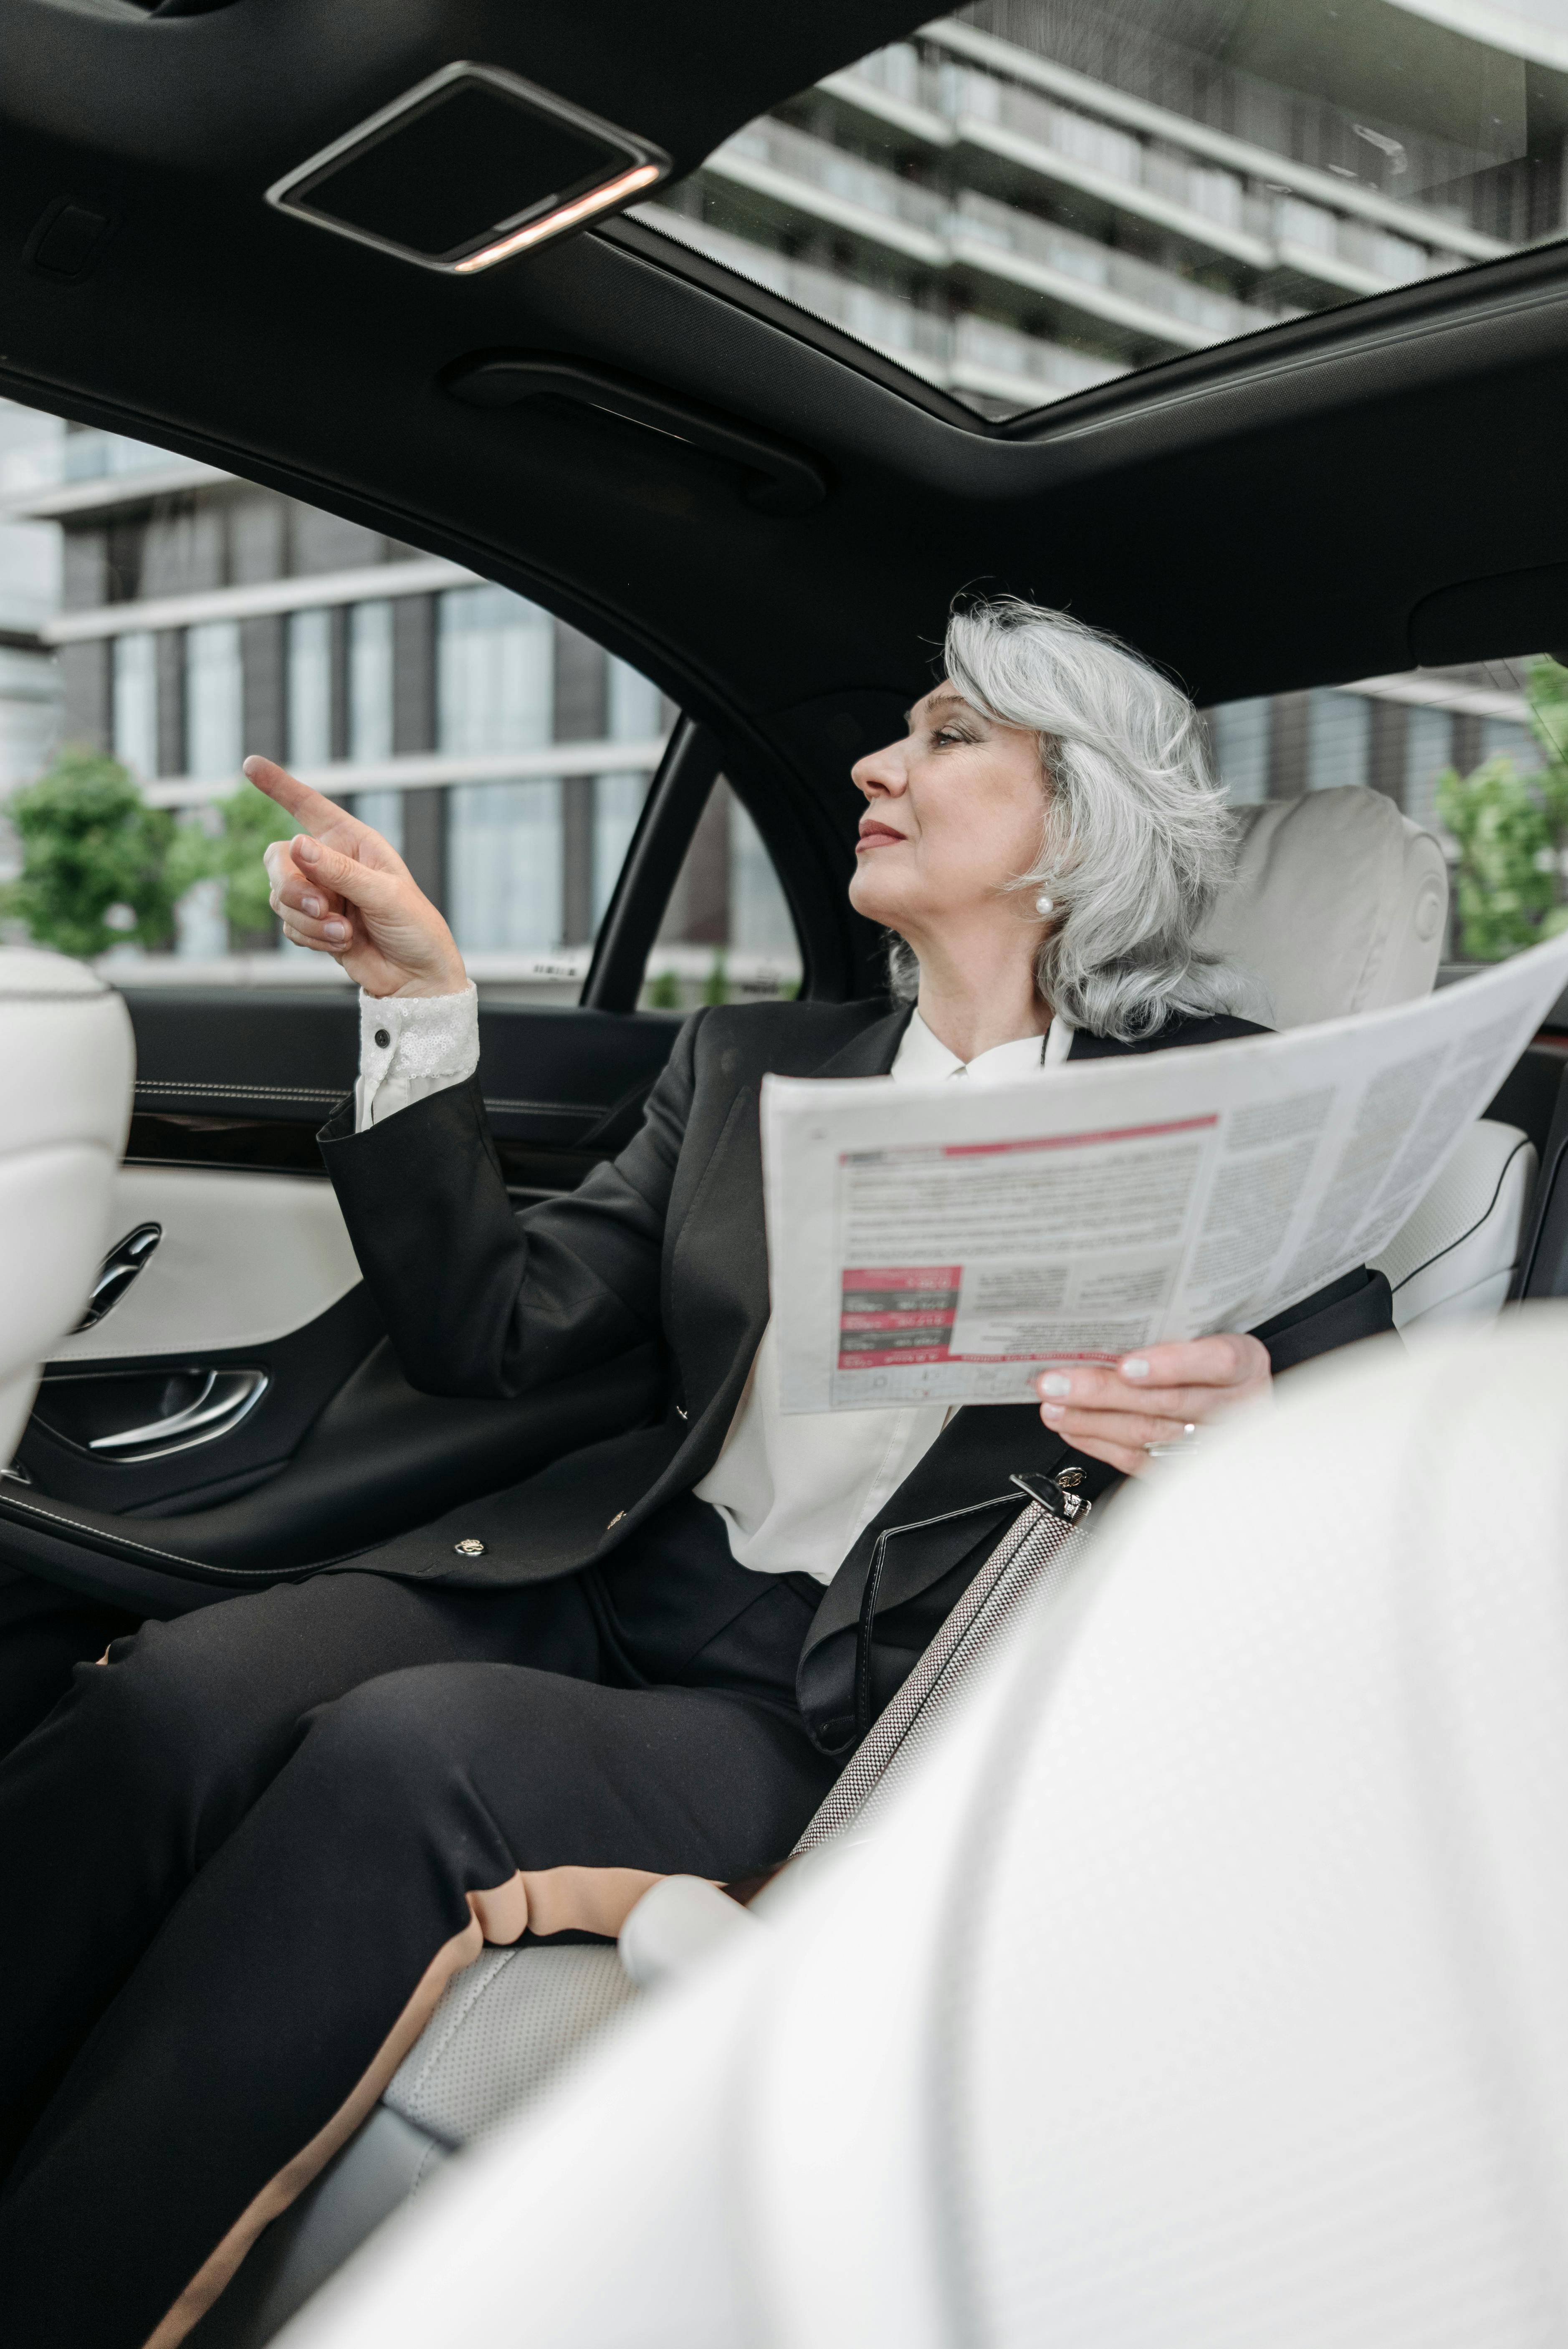 La femme âgée qui parle à sa famille dans la voiture | Source : Pexels